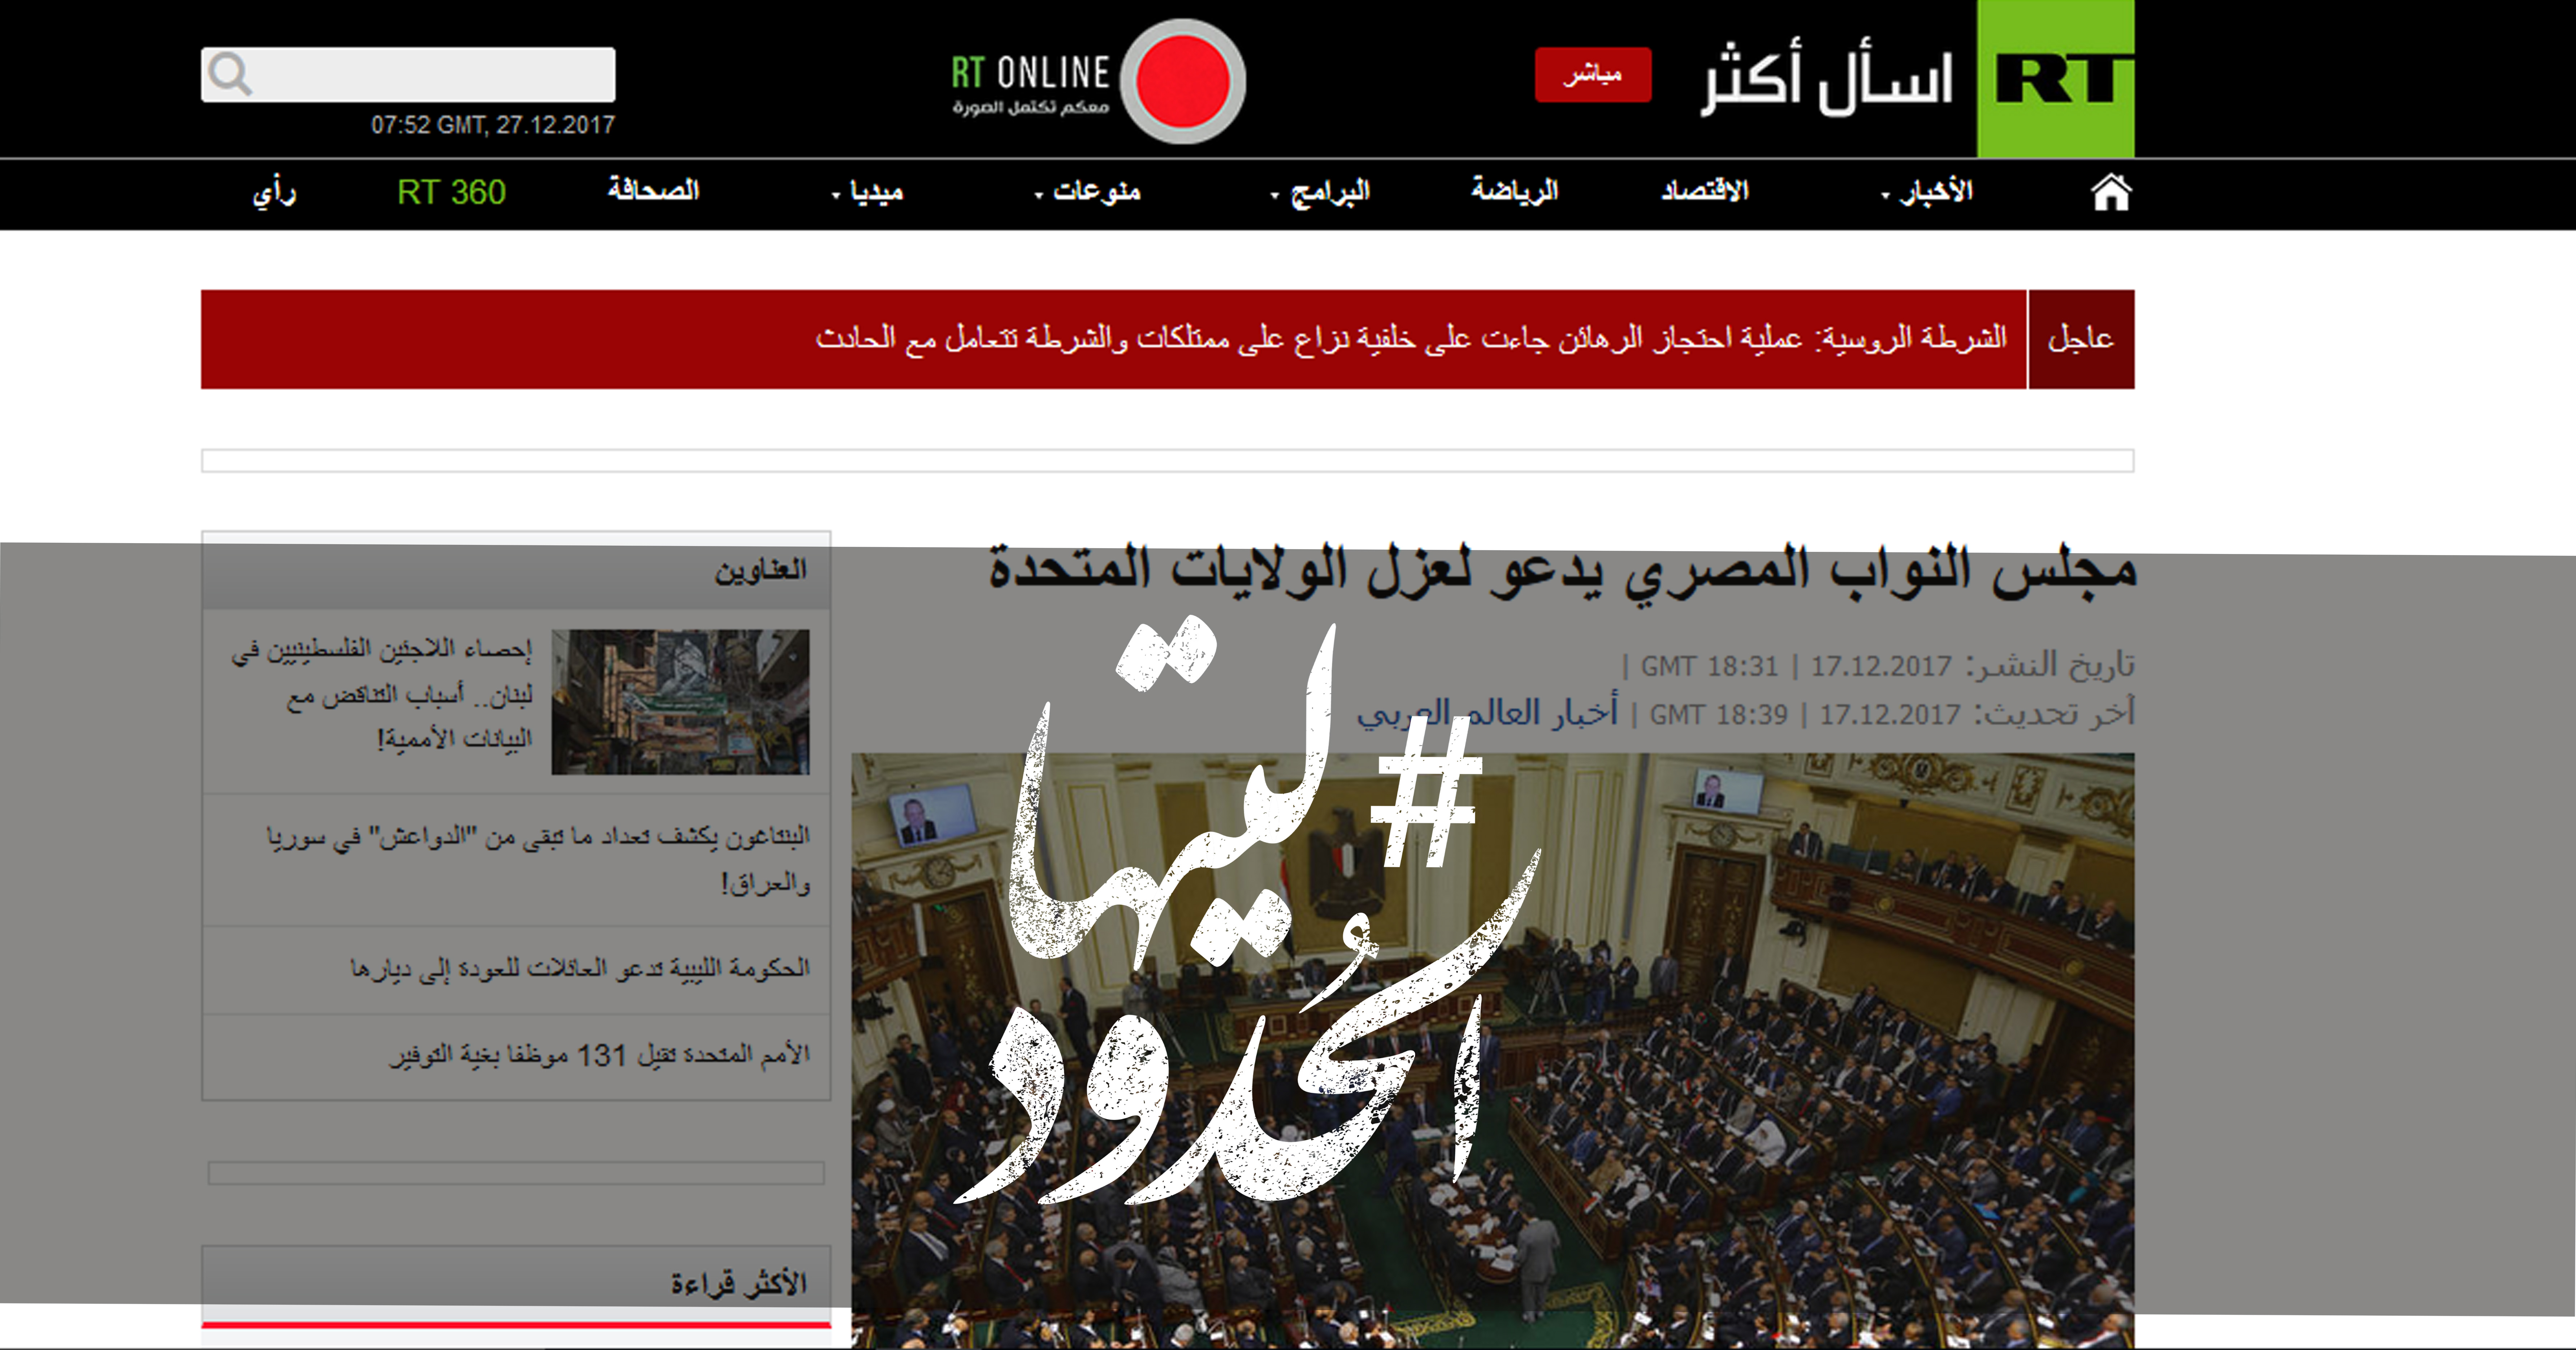 صورة مجلس النواب المصري يدعو لعزل الولايات المتحدة